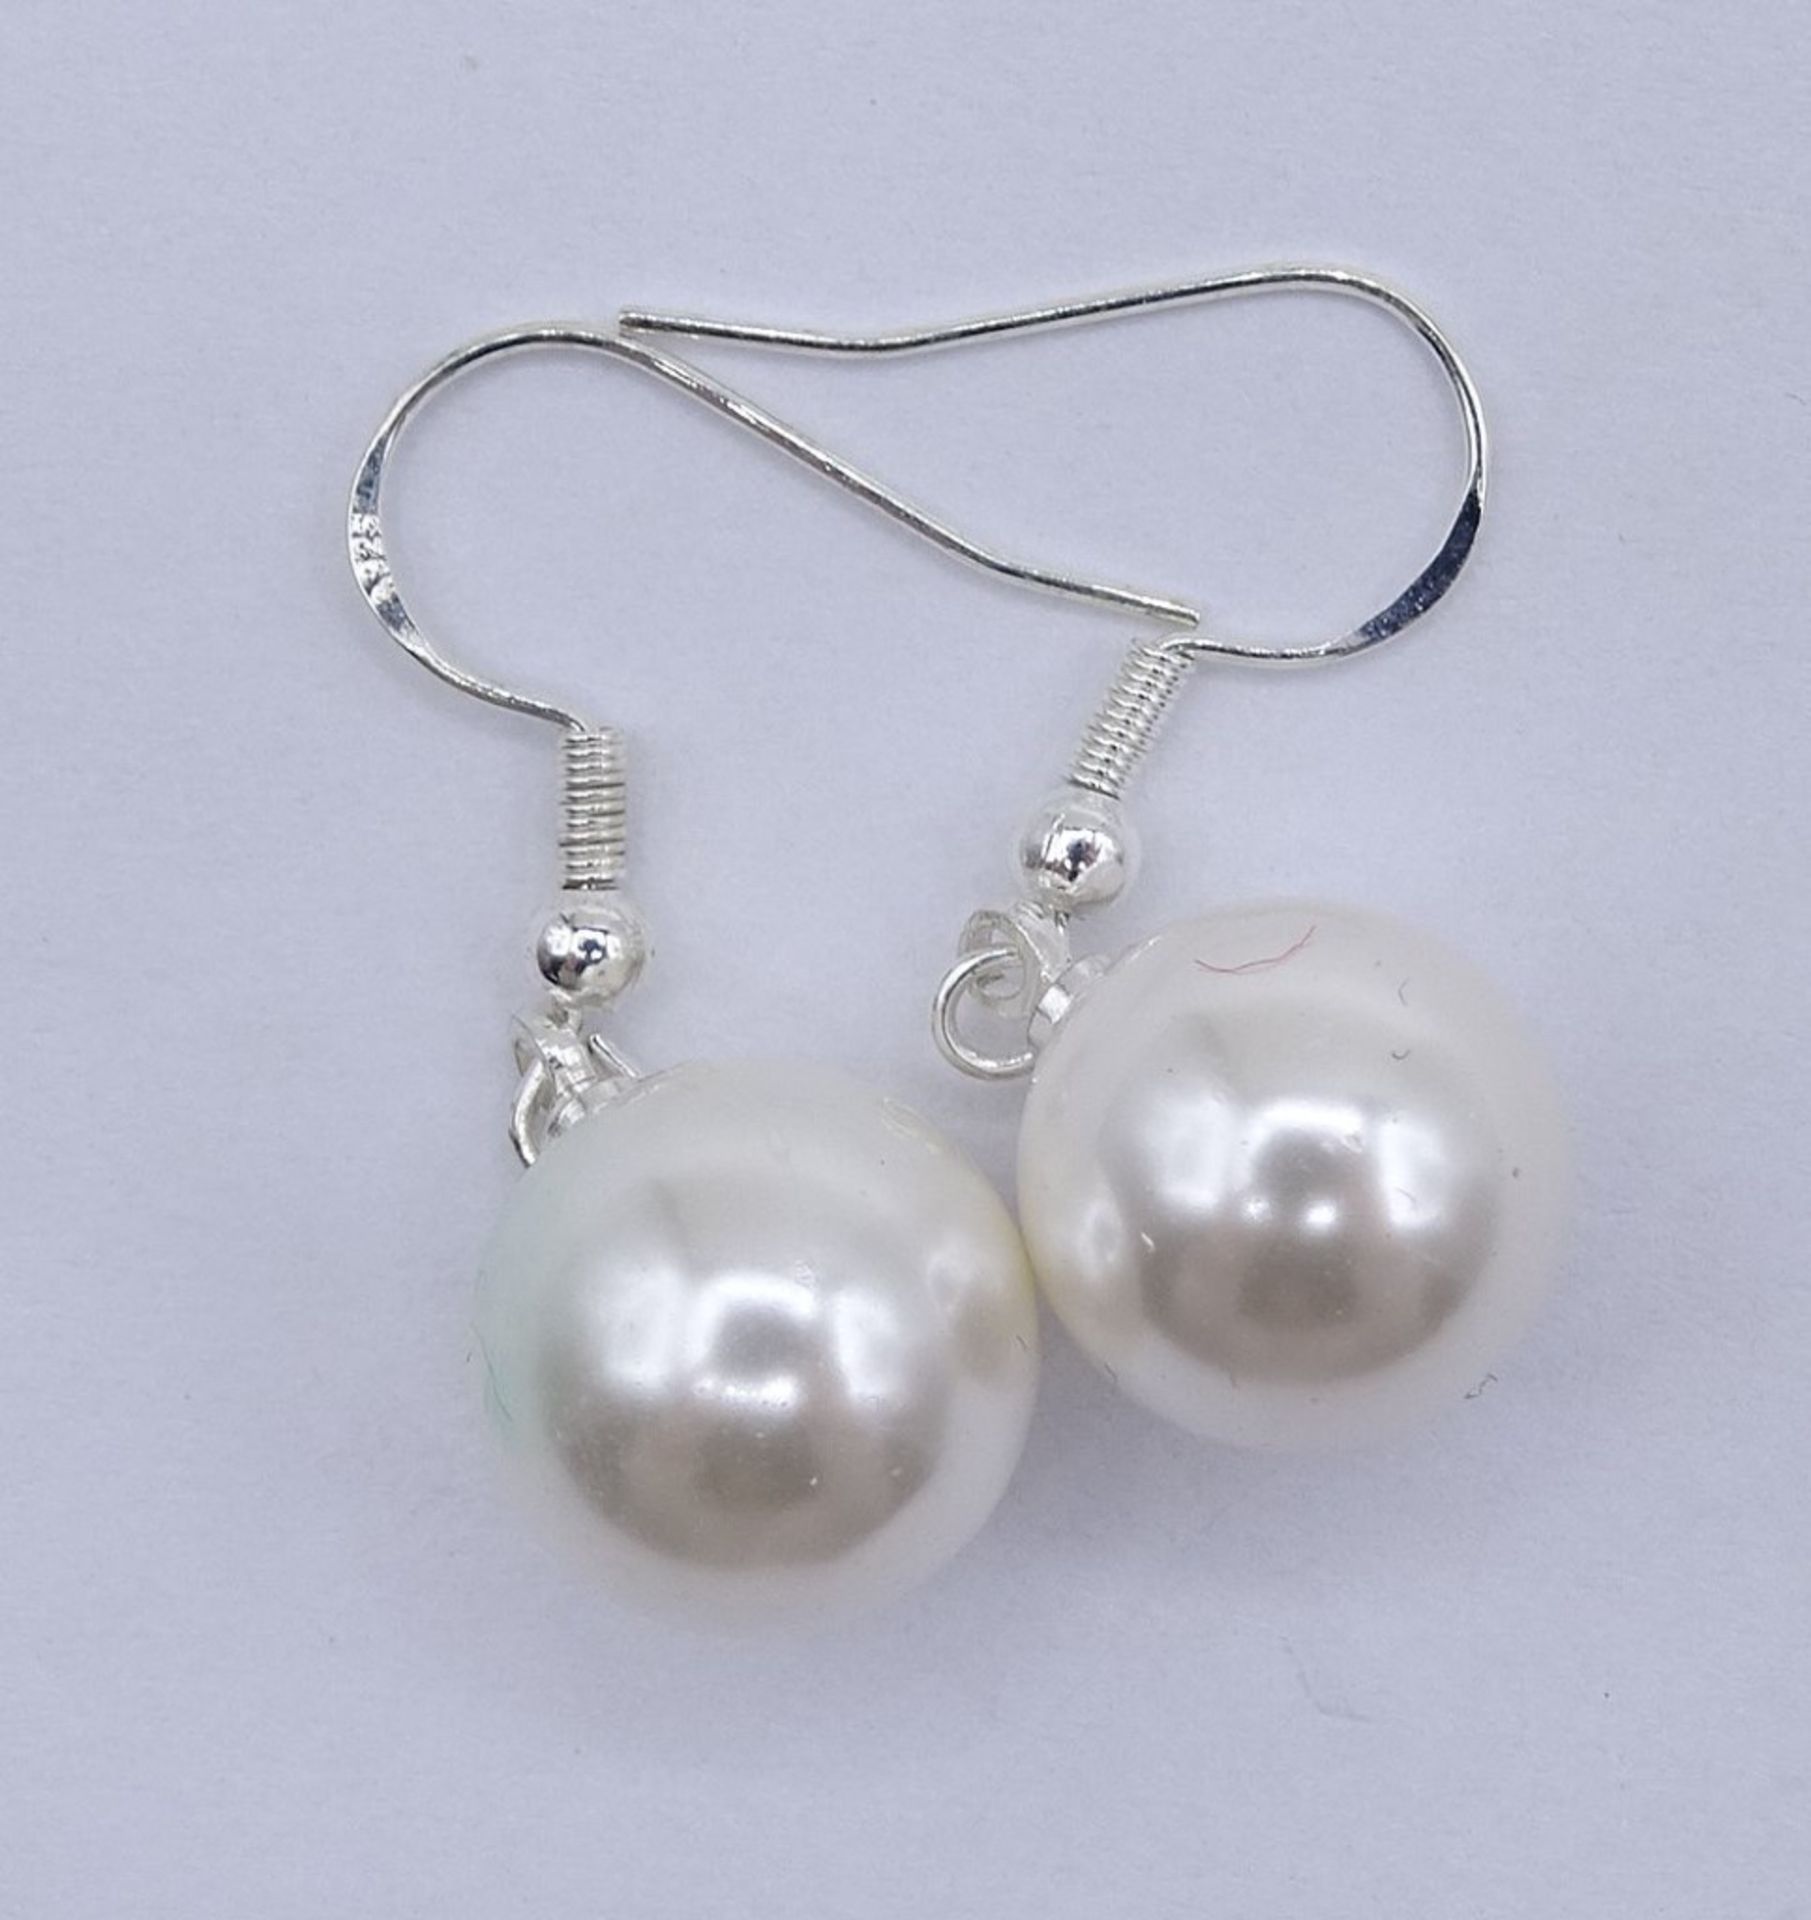 Perlenohrhänger, 925er-Silbermontur, Ø Perlen: 1,1 cm, L. 3,5 cm, 5 gr., eine Perle mit Kratzer